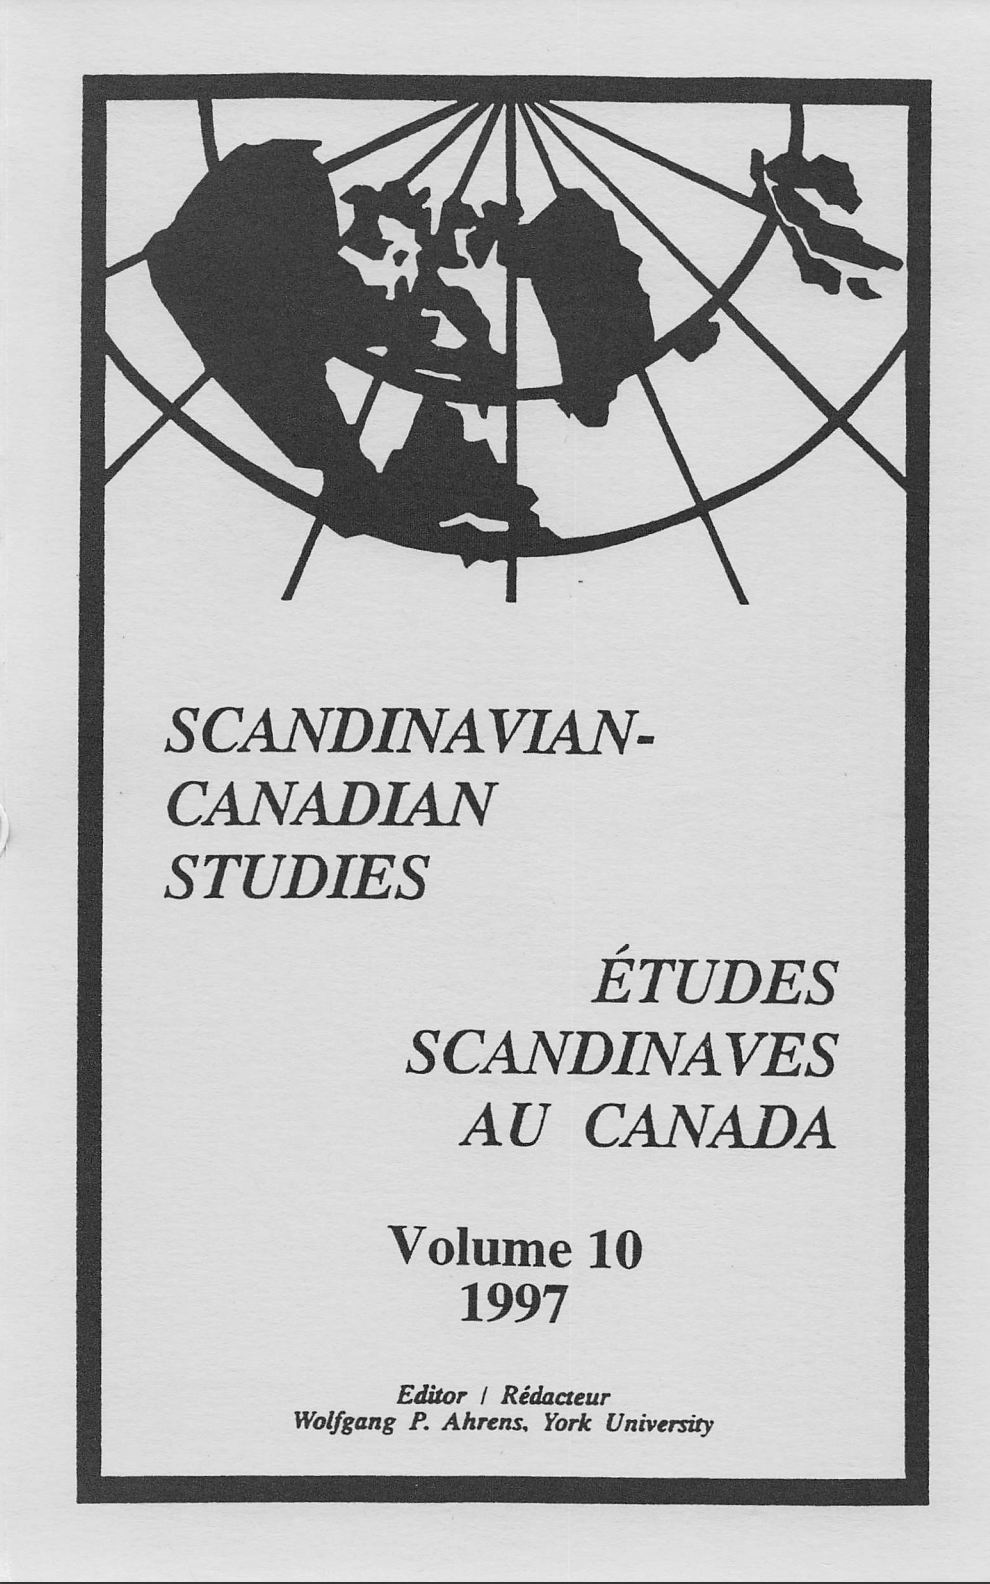 					View Vol. 10 (1997): SCANDINAVIAN-CANADIAN STUDIES/ÉTUDES SCANDINAVES AU CANADA Vol. 10 (1997)
				